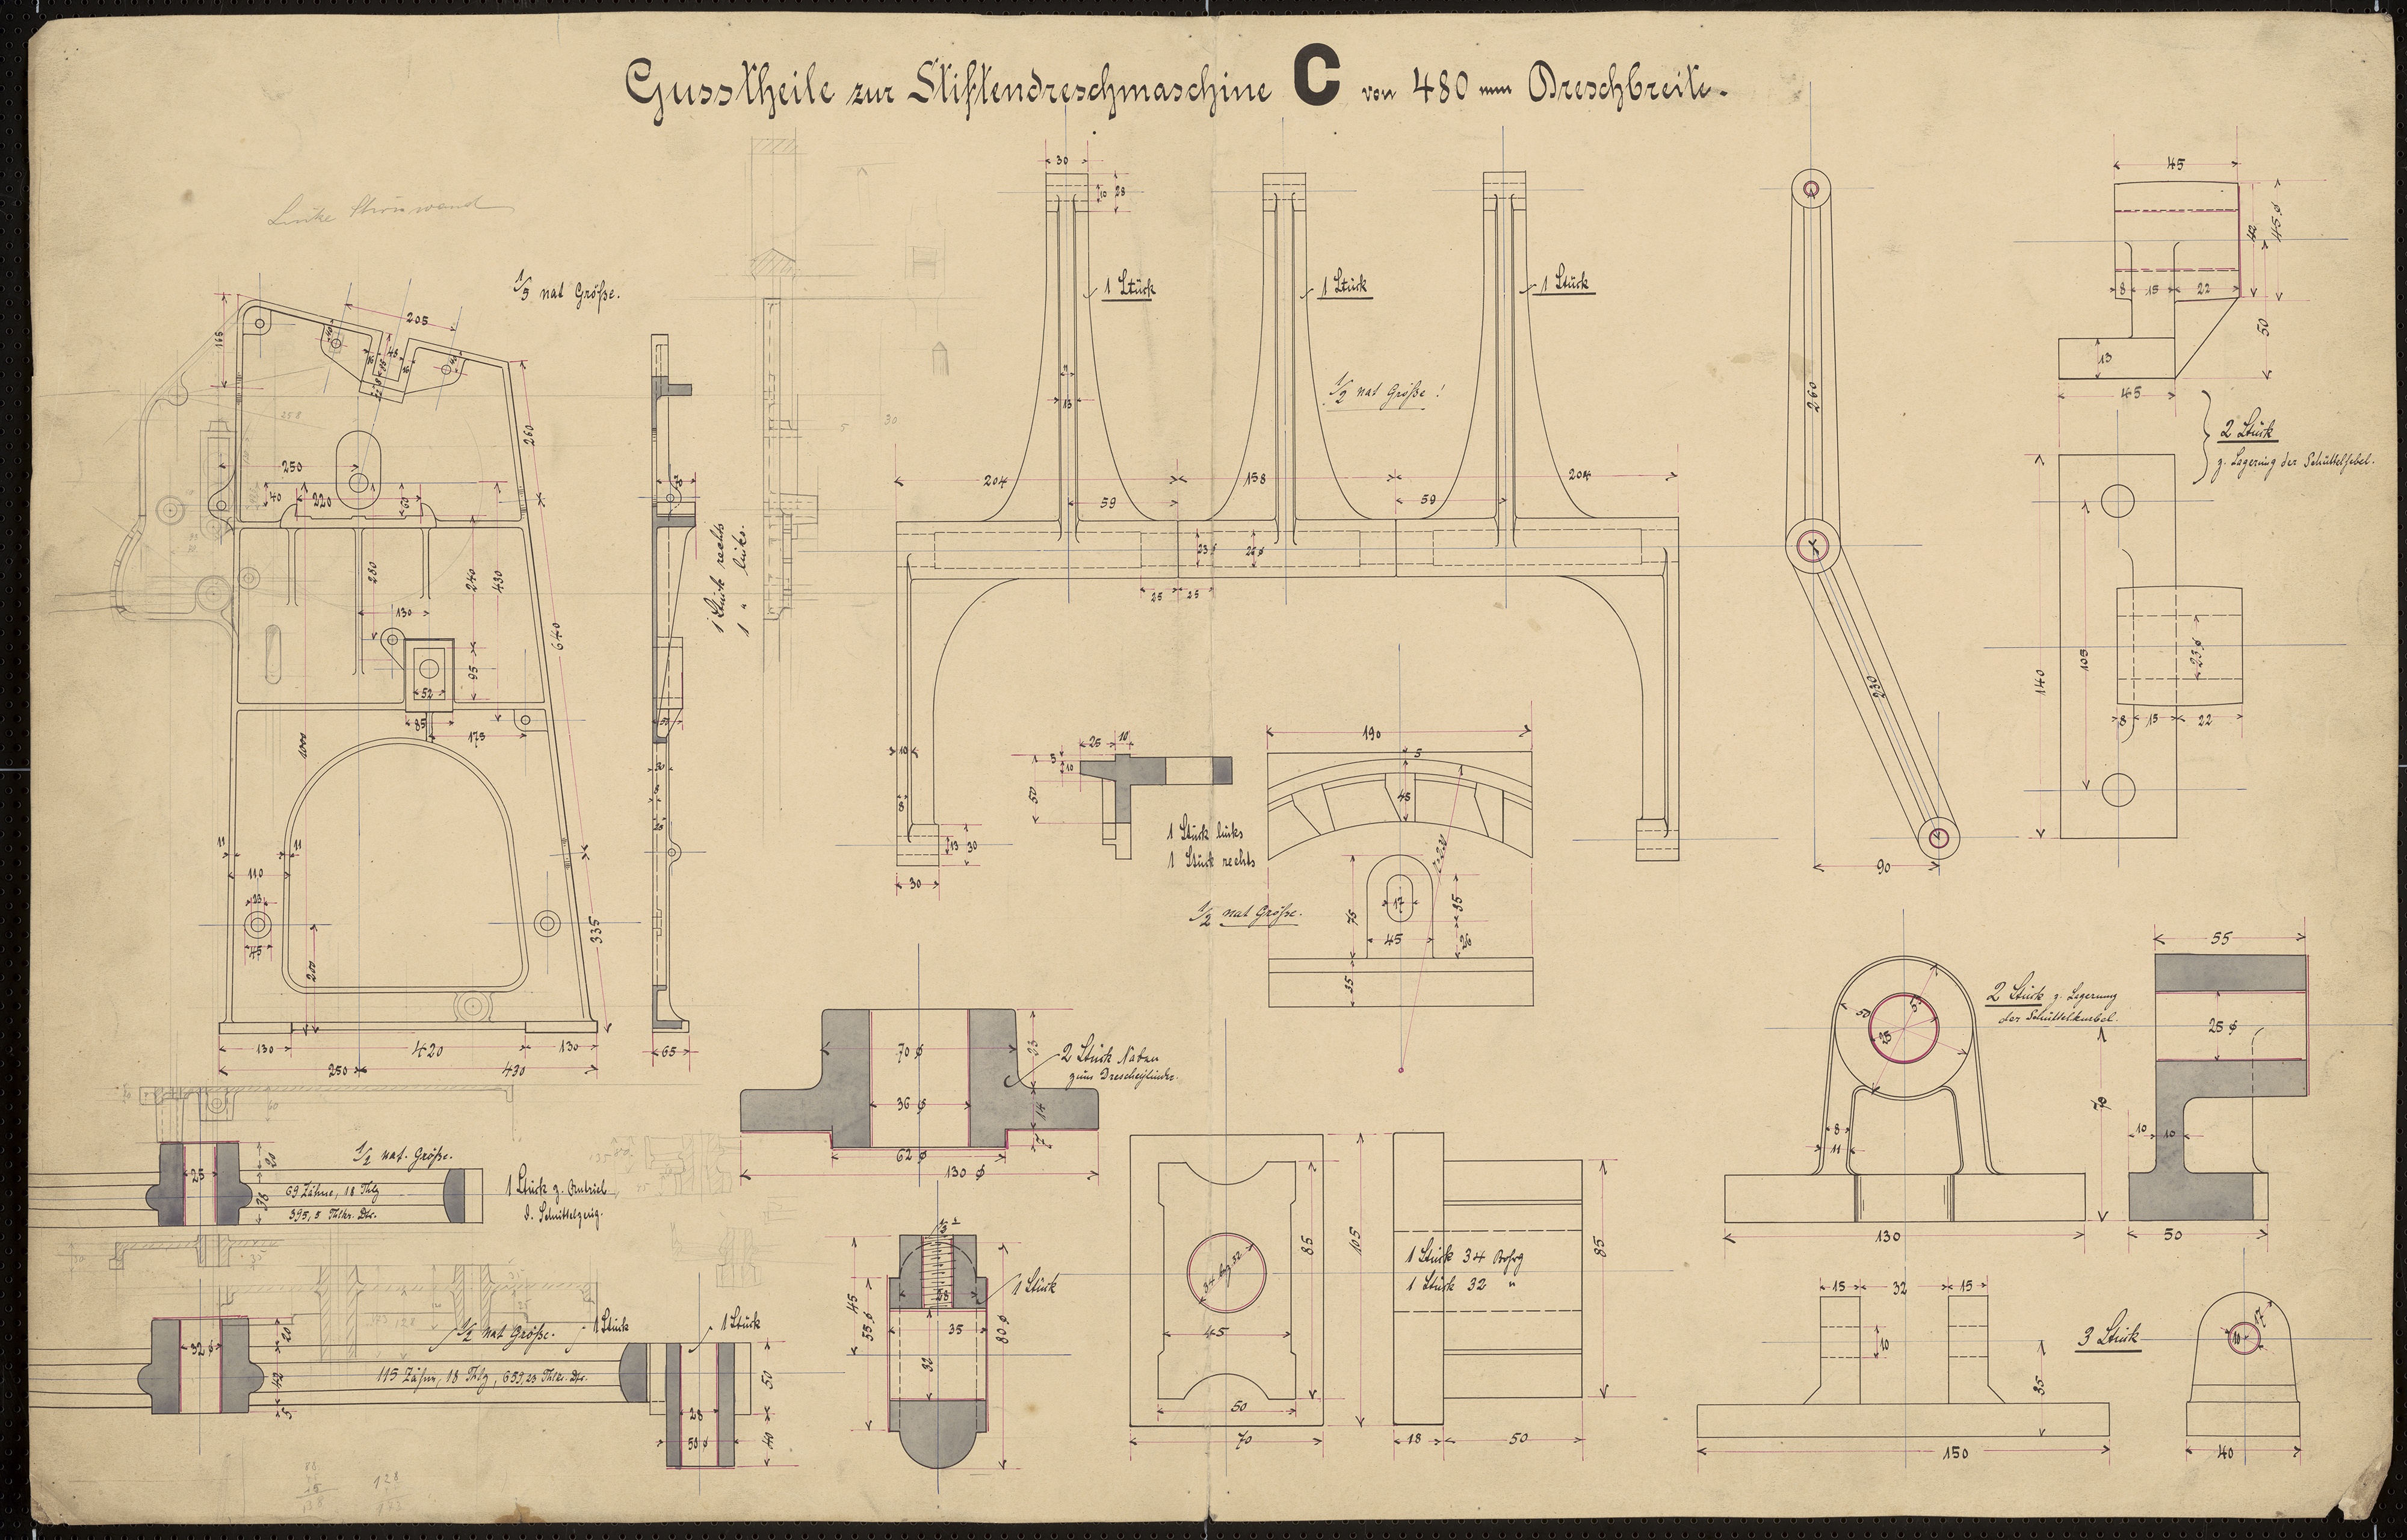 Technische Zeichnung : Gussteile zur Stiftendreschmaschine C von 480 mm Dreschbreite (Stiftung Deutsches Technikmuseum Berlin CC BY-SA)